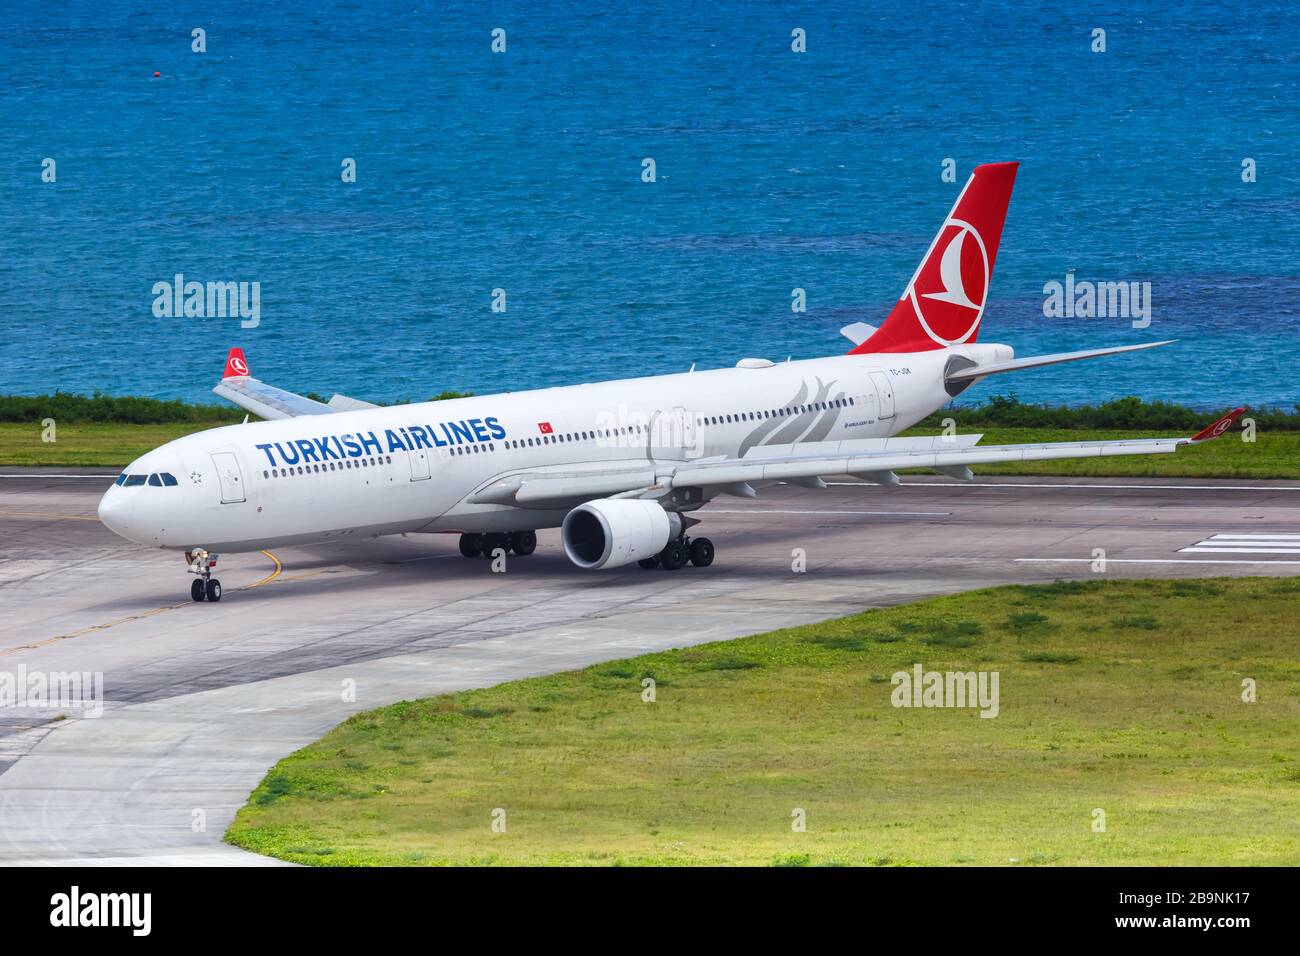 Mahe, Seychelles – 8 février 2020 : avion Airbus   de Turkish Airlines à l'aéroport de Mahe (SEZ) aux Seychelles. Airbus est un manu européen d'avions Banque D'Images